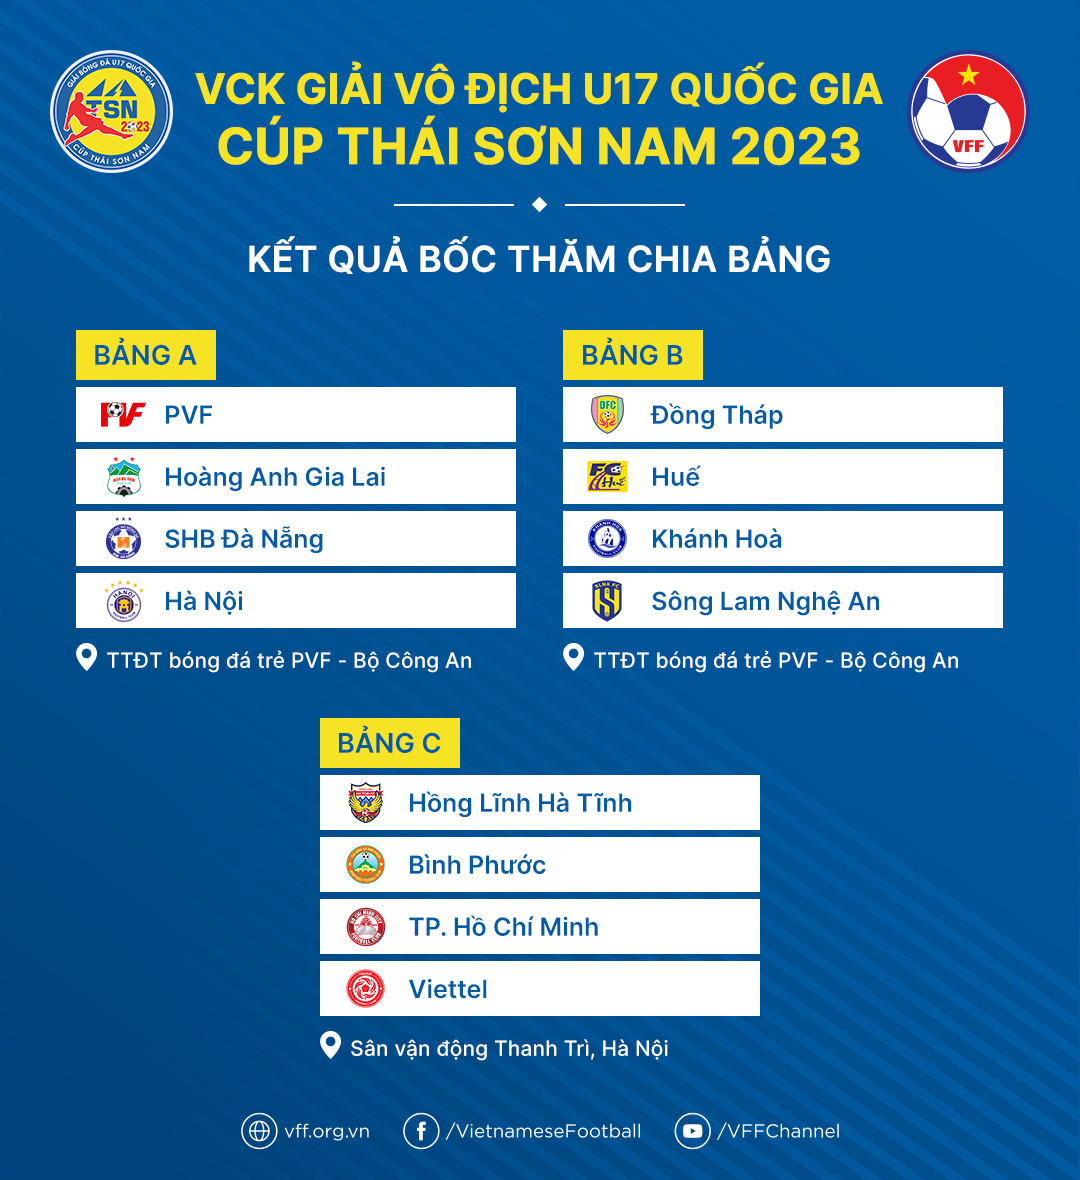 VCK giải vô địch U17 quốc gia - Cúp Thái Sơn Nam 2023 | Hứa hẹn những cuộc đối đầu hấp dẫn - Ảnh 1.